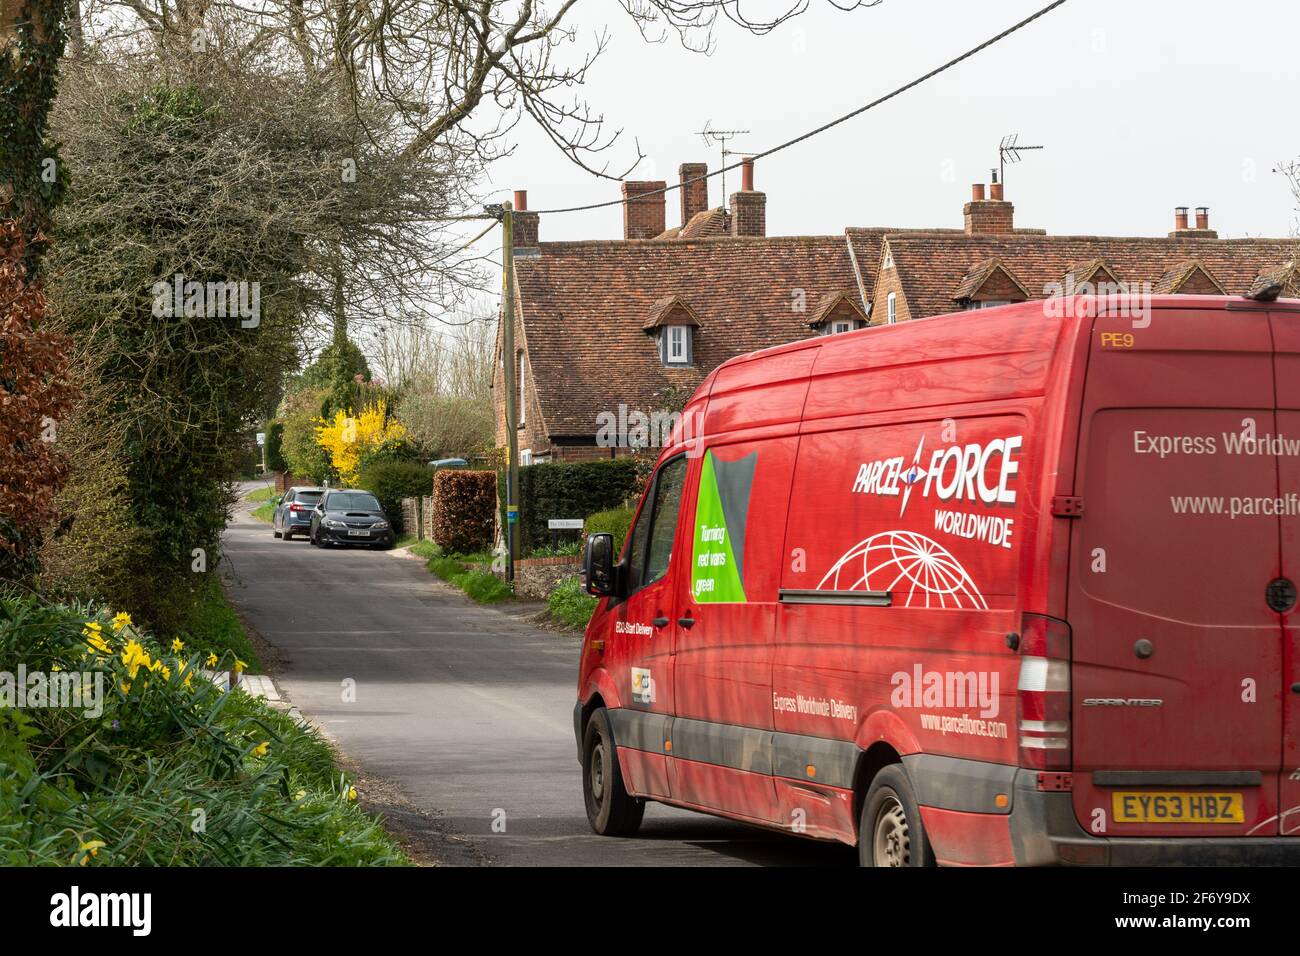 Parcelforce en todo el mundo red van a través de la aldea de Hampshire de Dummer, Inglaterra, Reino Unido Foto de stock